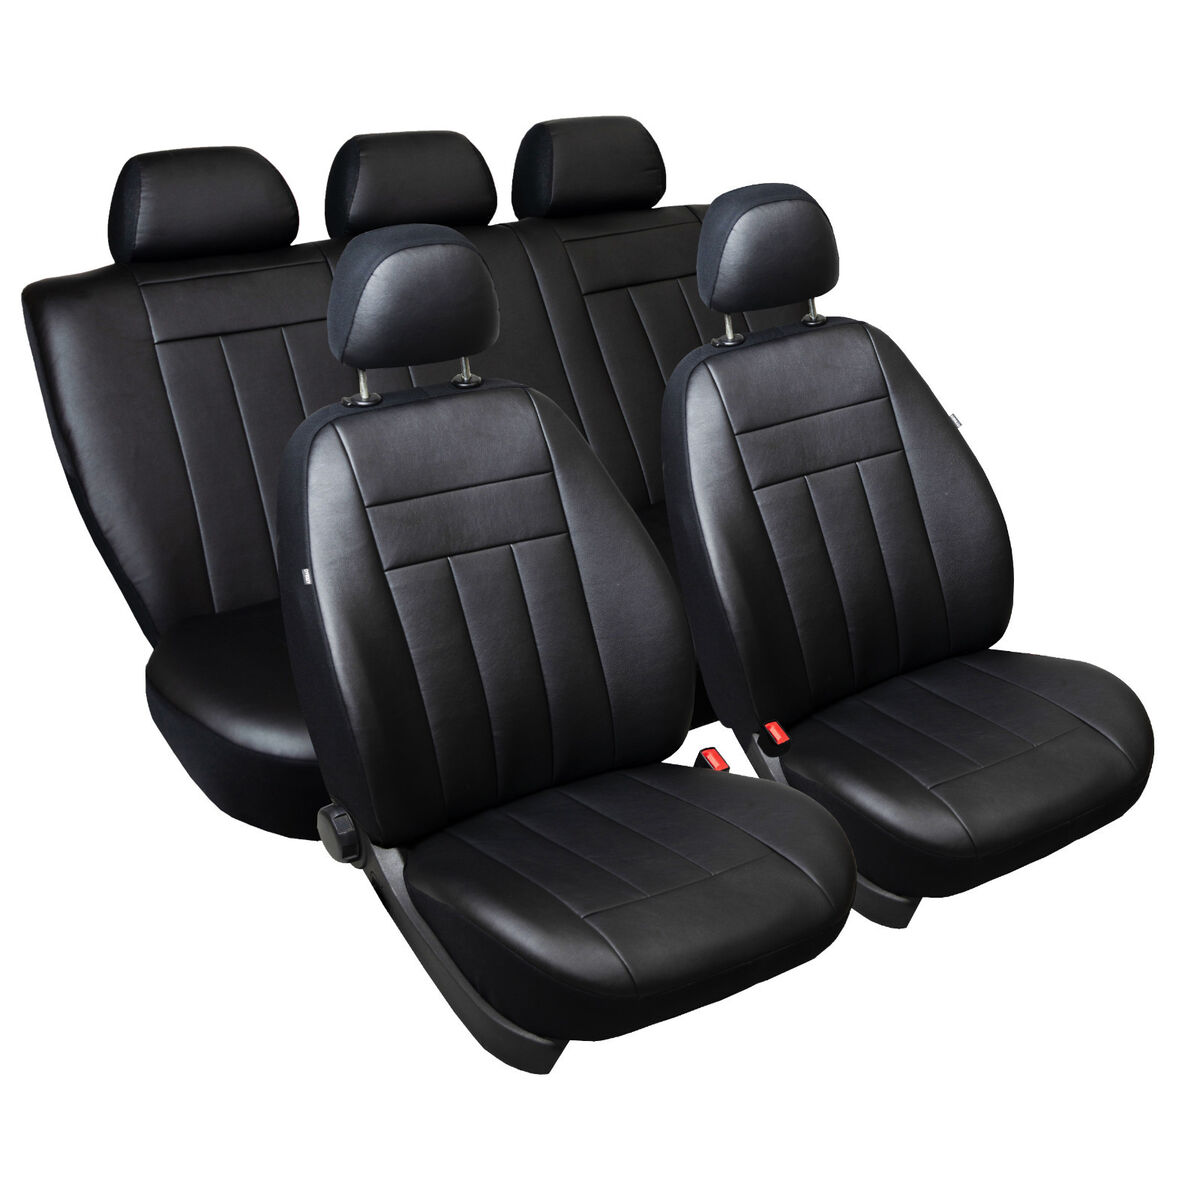 Maßgefertigte Kunstleder Sitzbezüge in Schwarz für Ford Fiesta Mk4